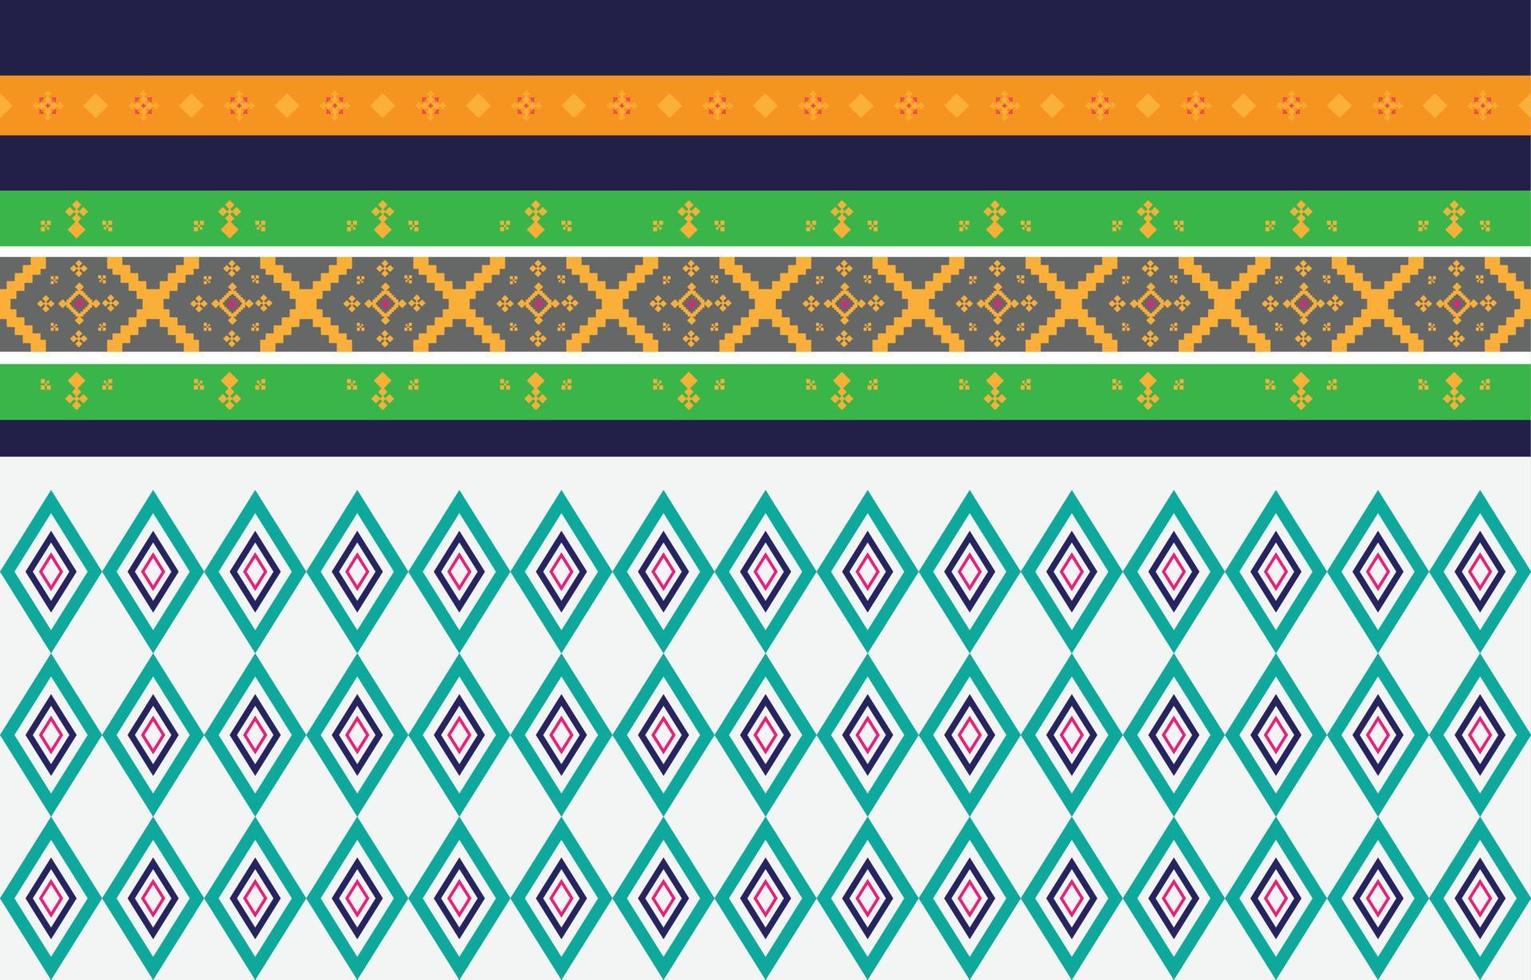 motivi geometrici e tribali astratti, design d'uso motivi in tessuto locale, design ispirato alle tribù indigene. illustrazione vettoriale geometrica